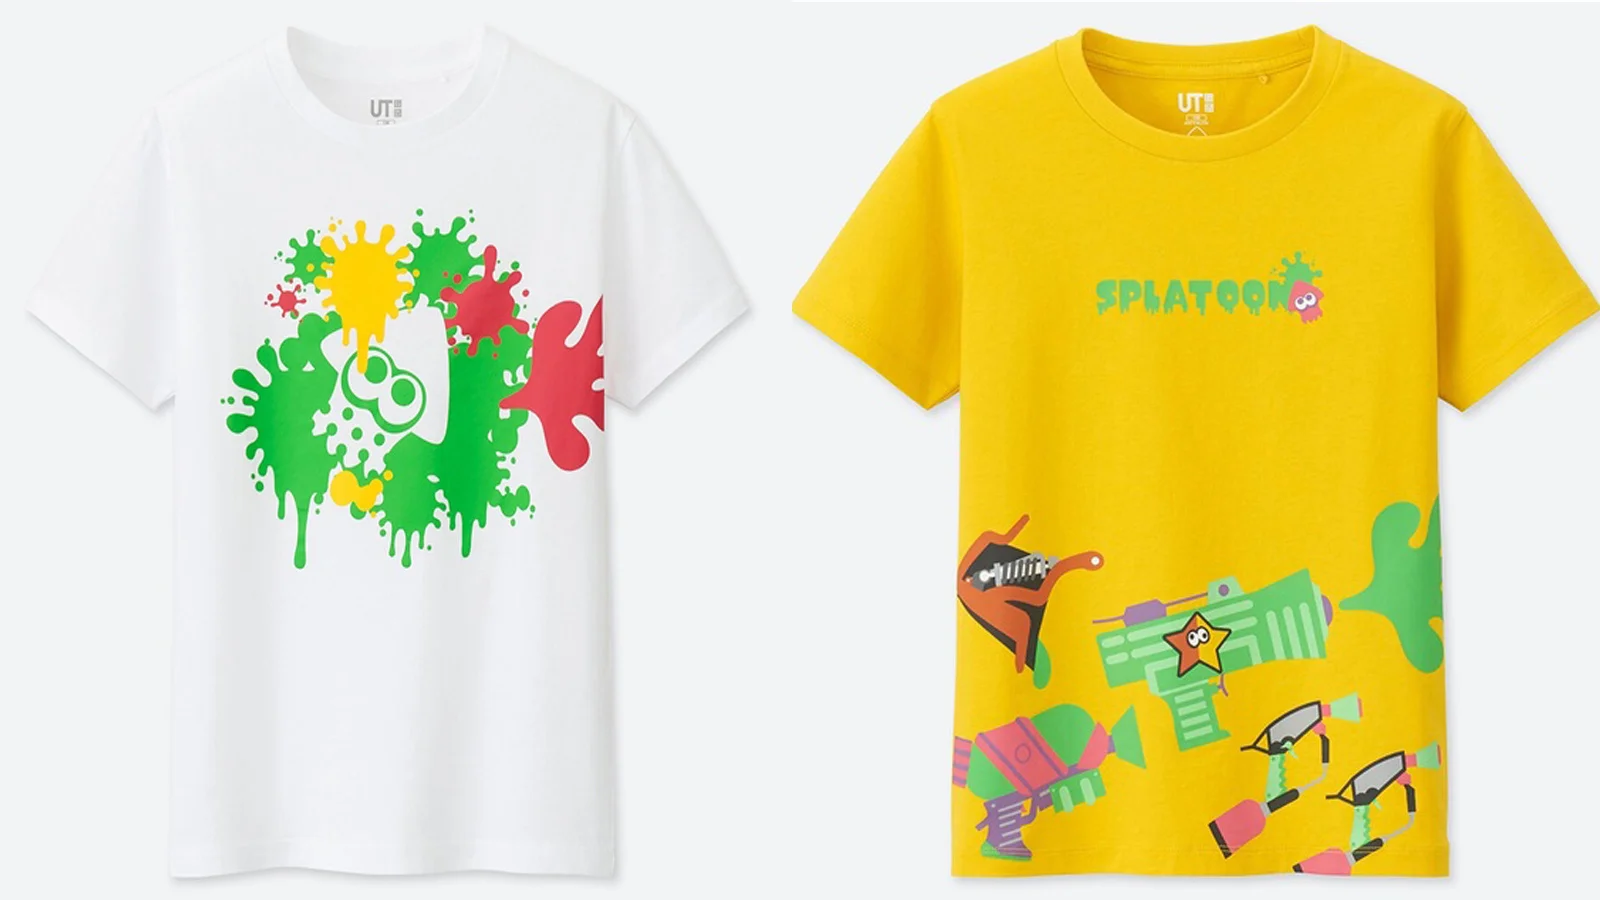 日本优衣库将在4月份推出《SPLATOON2》和《超级马里奥》的联动TEE